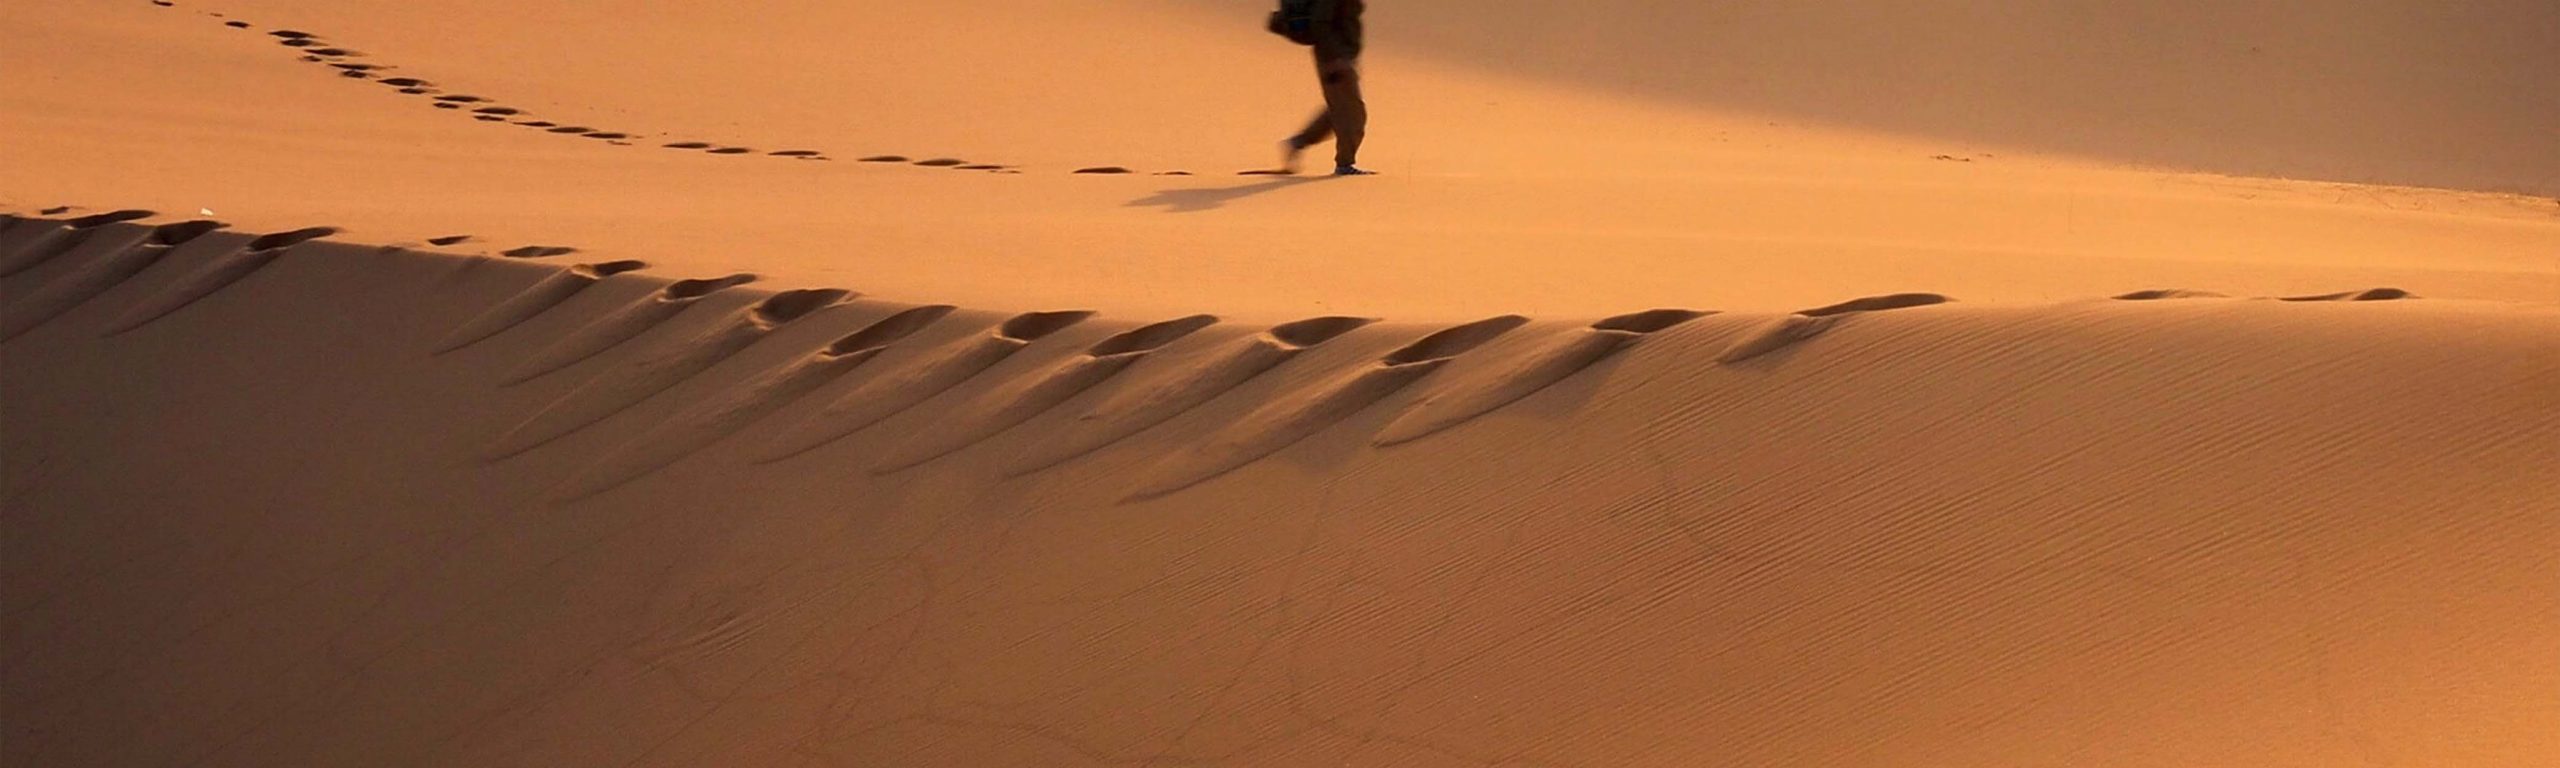 uomo che cammina nel deserto